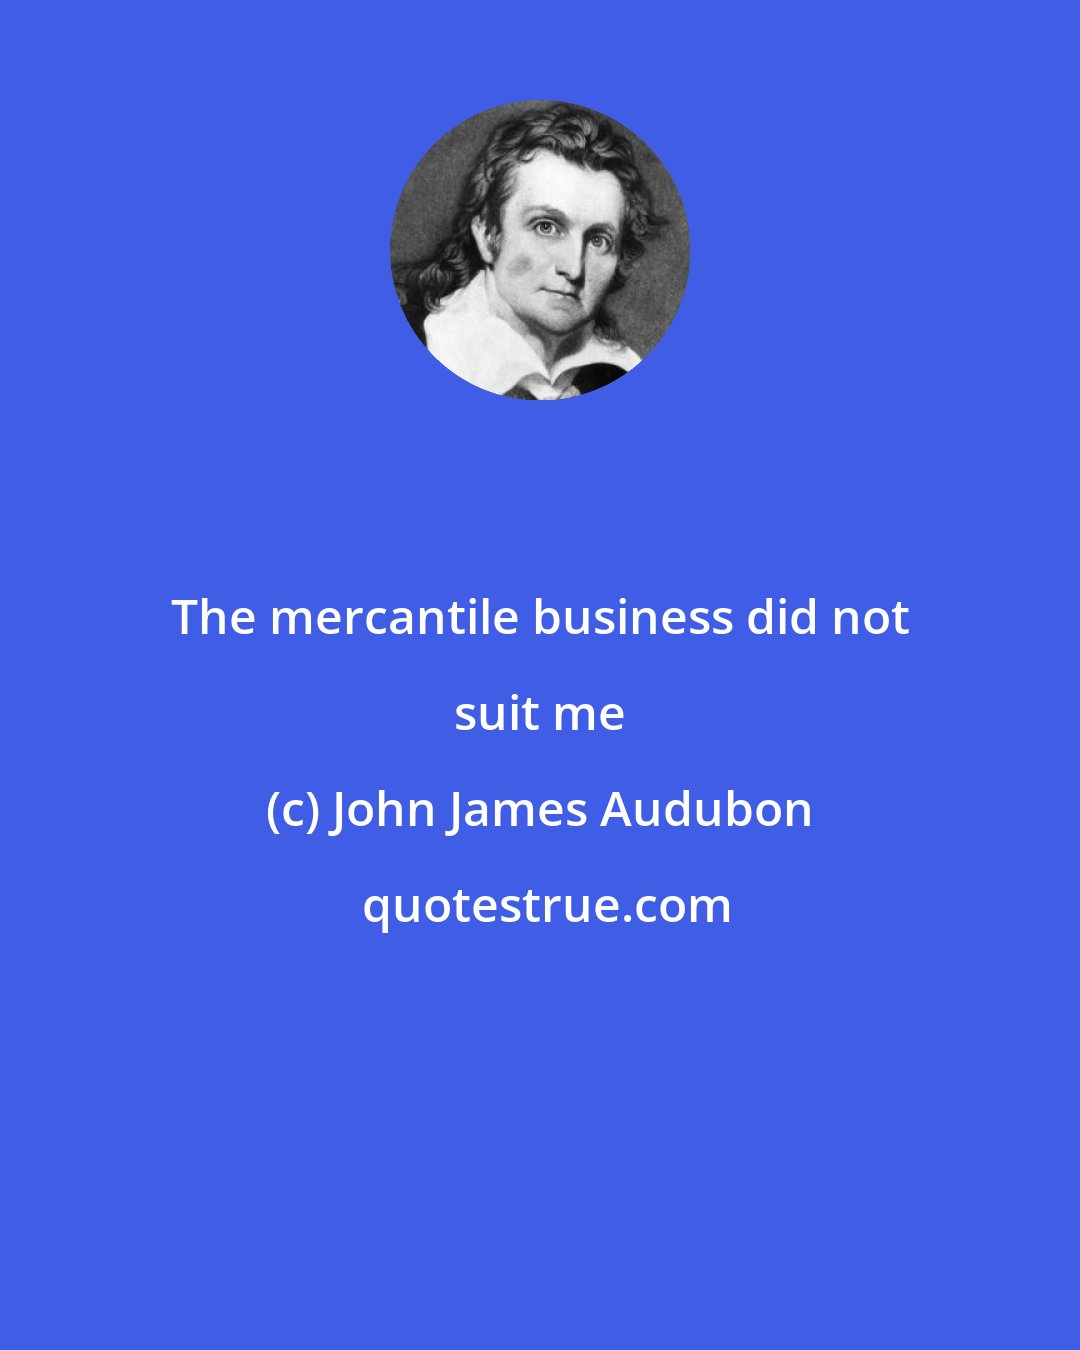 John James Audubon: The mercantile business did not suit me